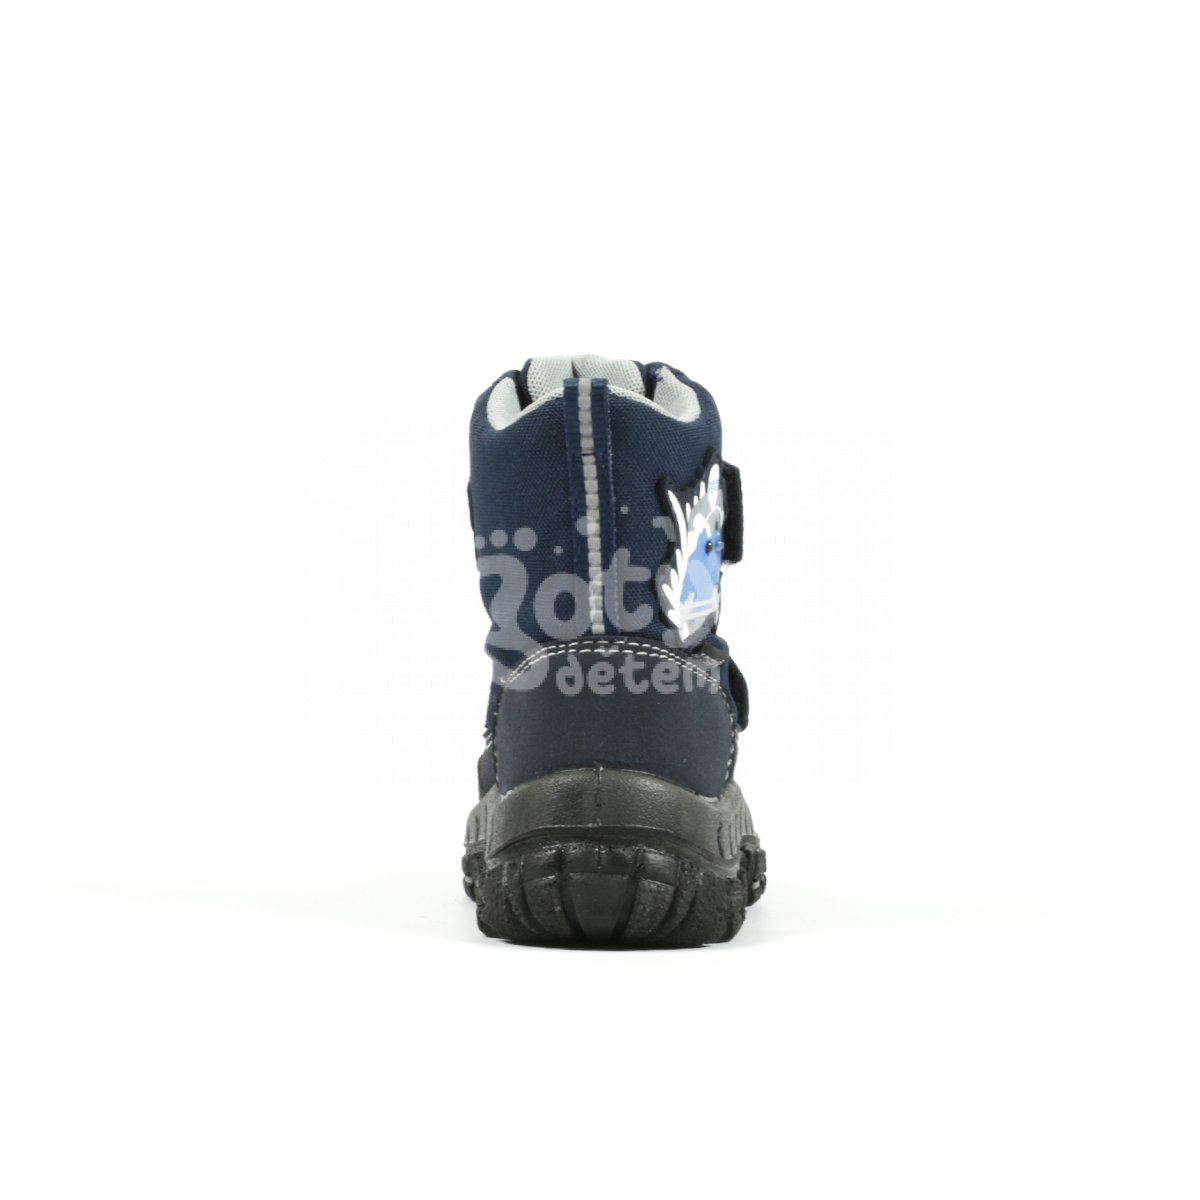 Zimní blikací obuv Davos Richter 7902-6191-7200 modrá